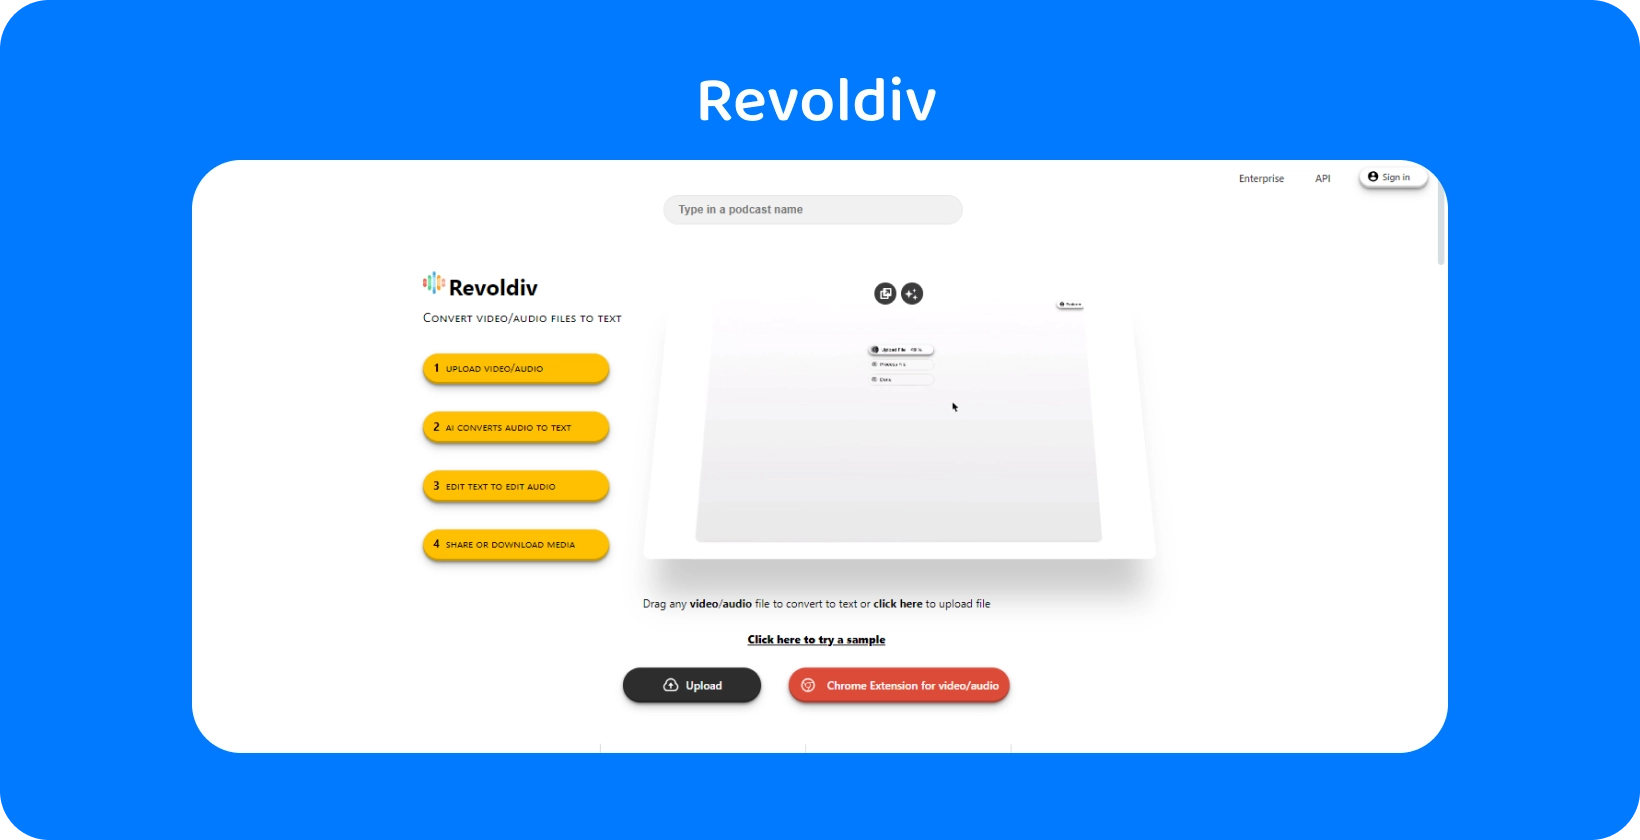 A interface web elegante da Revoldiv está pronta para uploads de áudio e conversão para texto, mostrando simplicidade e eficiência.